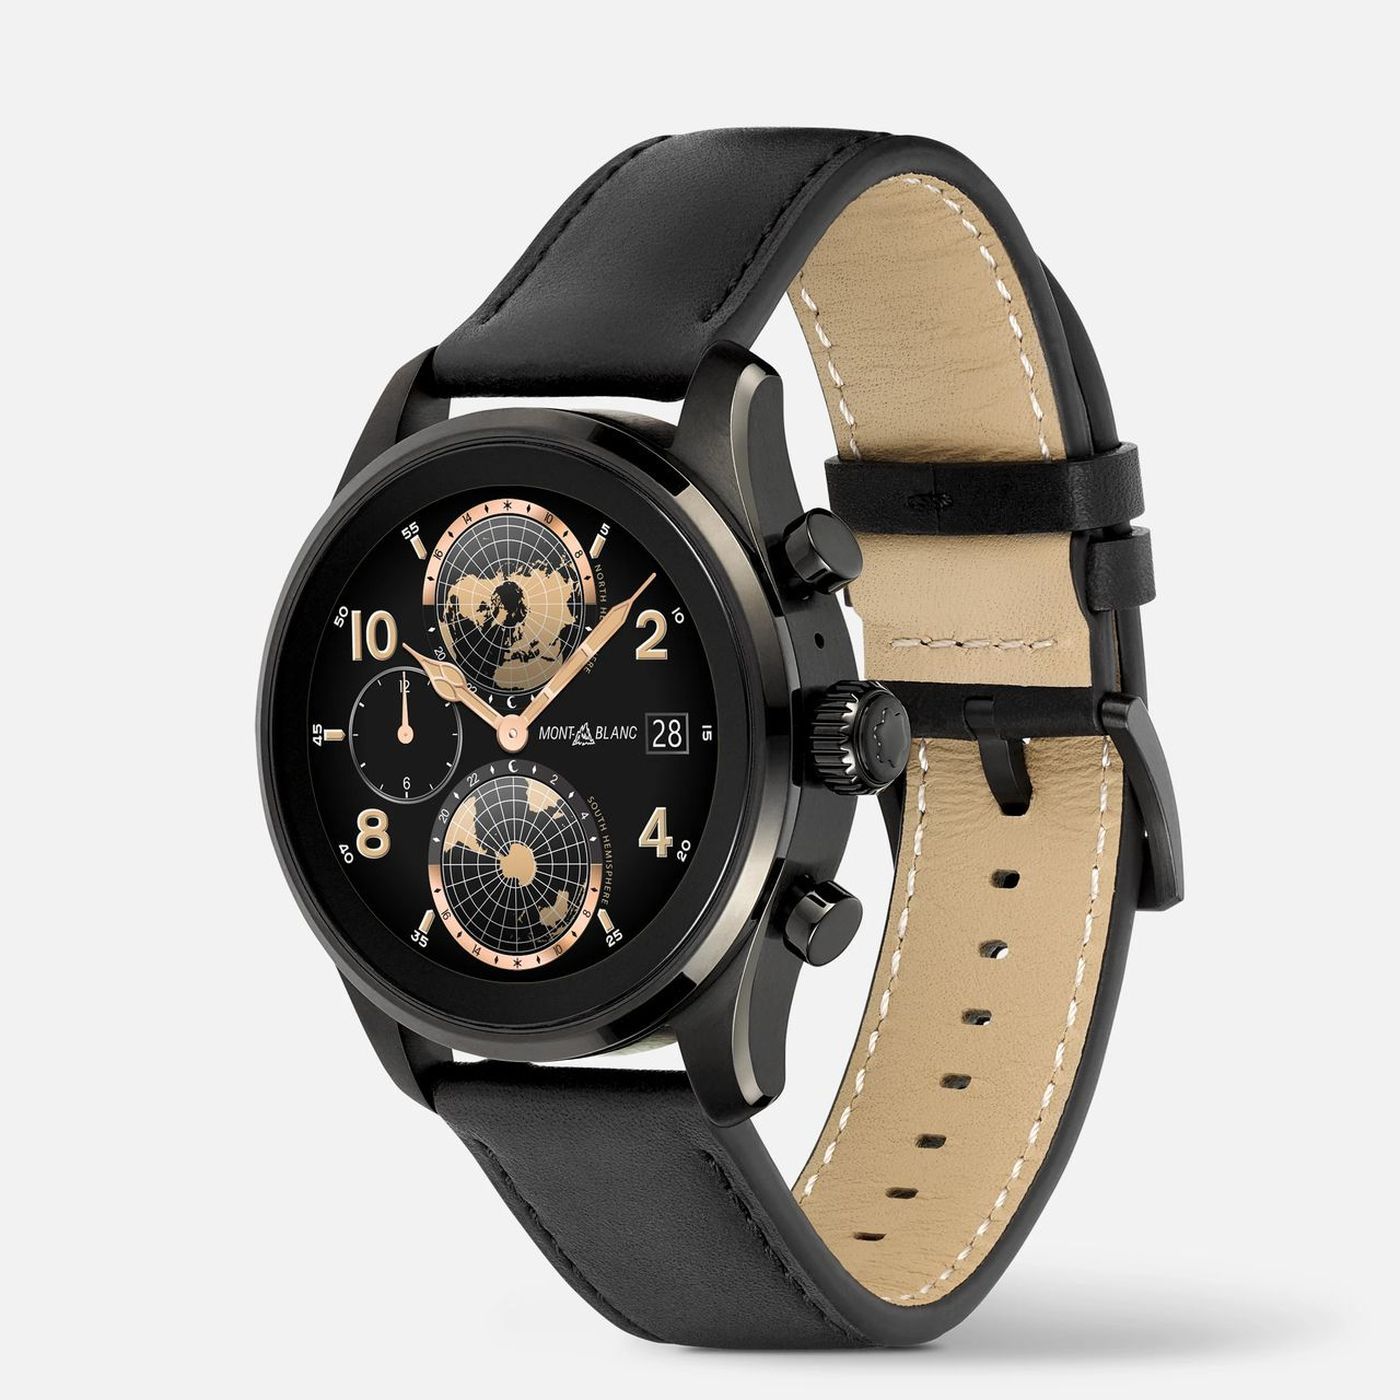 Image article Summit 3 : Montblanc dévoile une montre connectée (forcément) de luxe et sous Wear OS 3